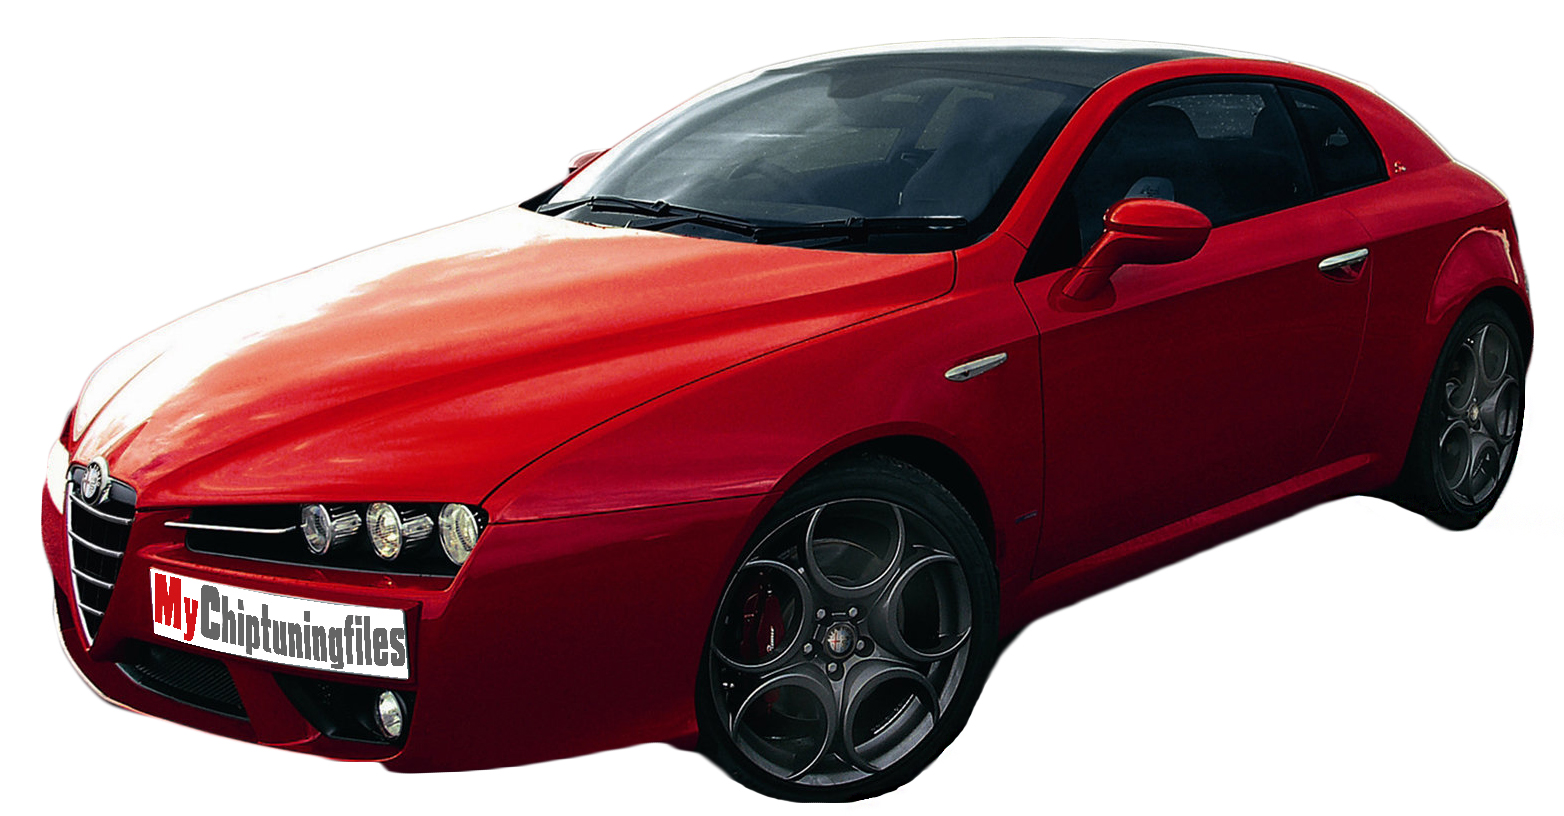 Alfa Romeo 159 2.2 JTS 185hp tuning